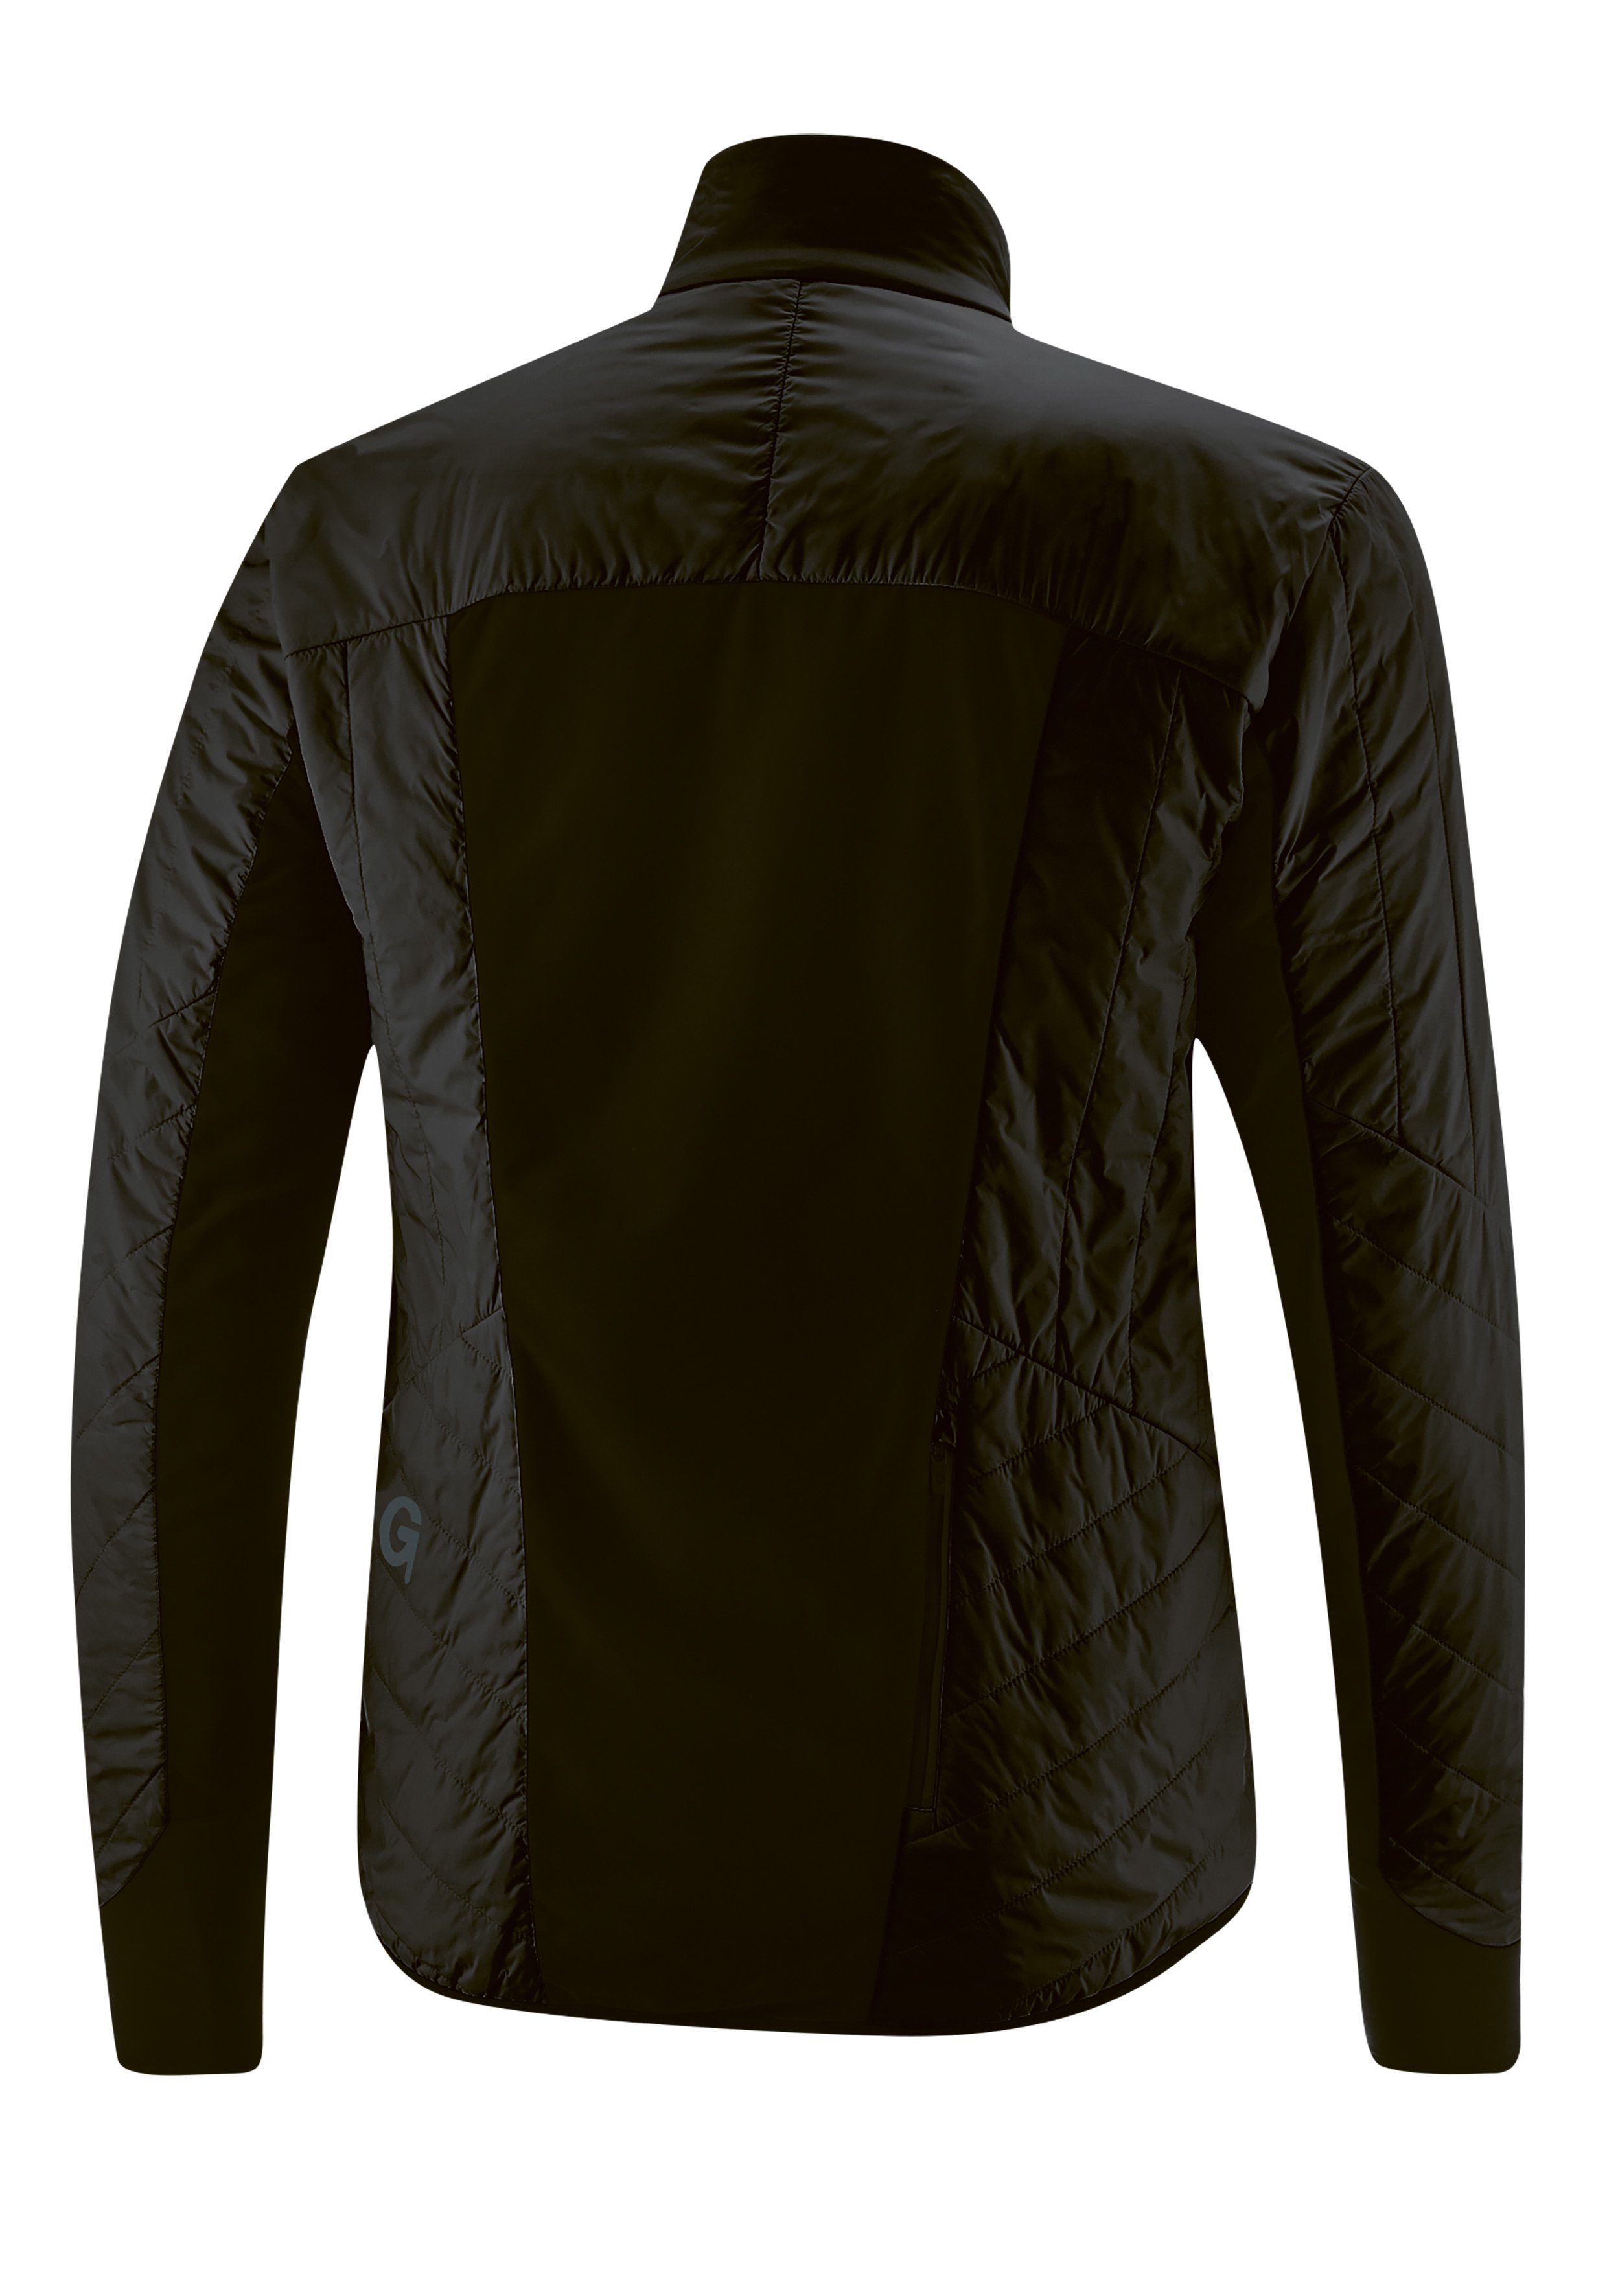 Herren Gonso und Tomar Fahrradjacke winddicht schwarz Primaloft-Jacke, warm, atmungsaktiv